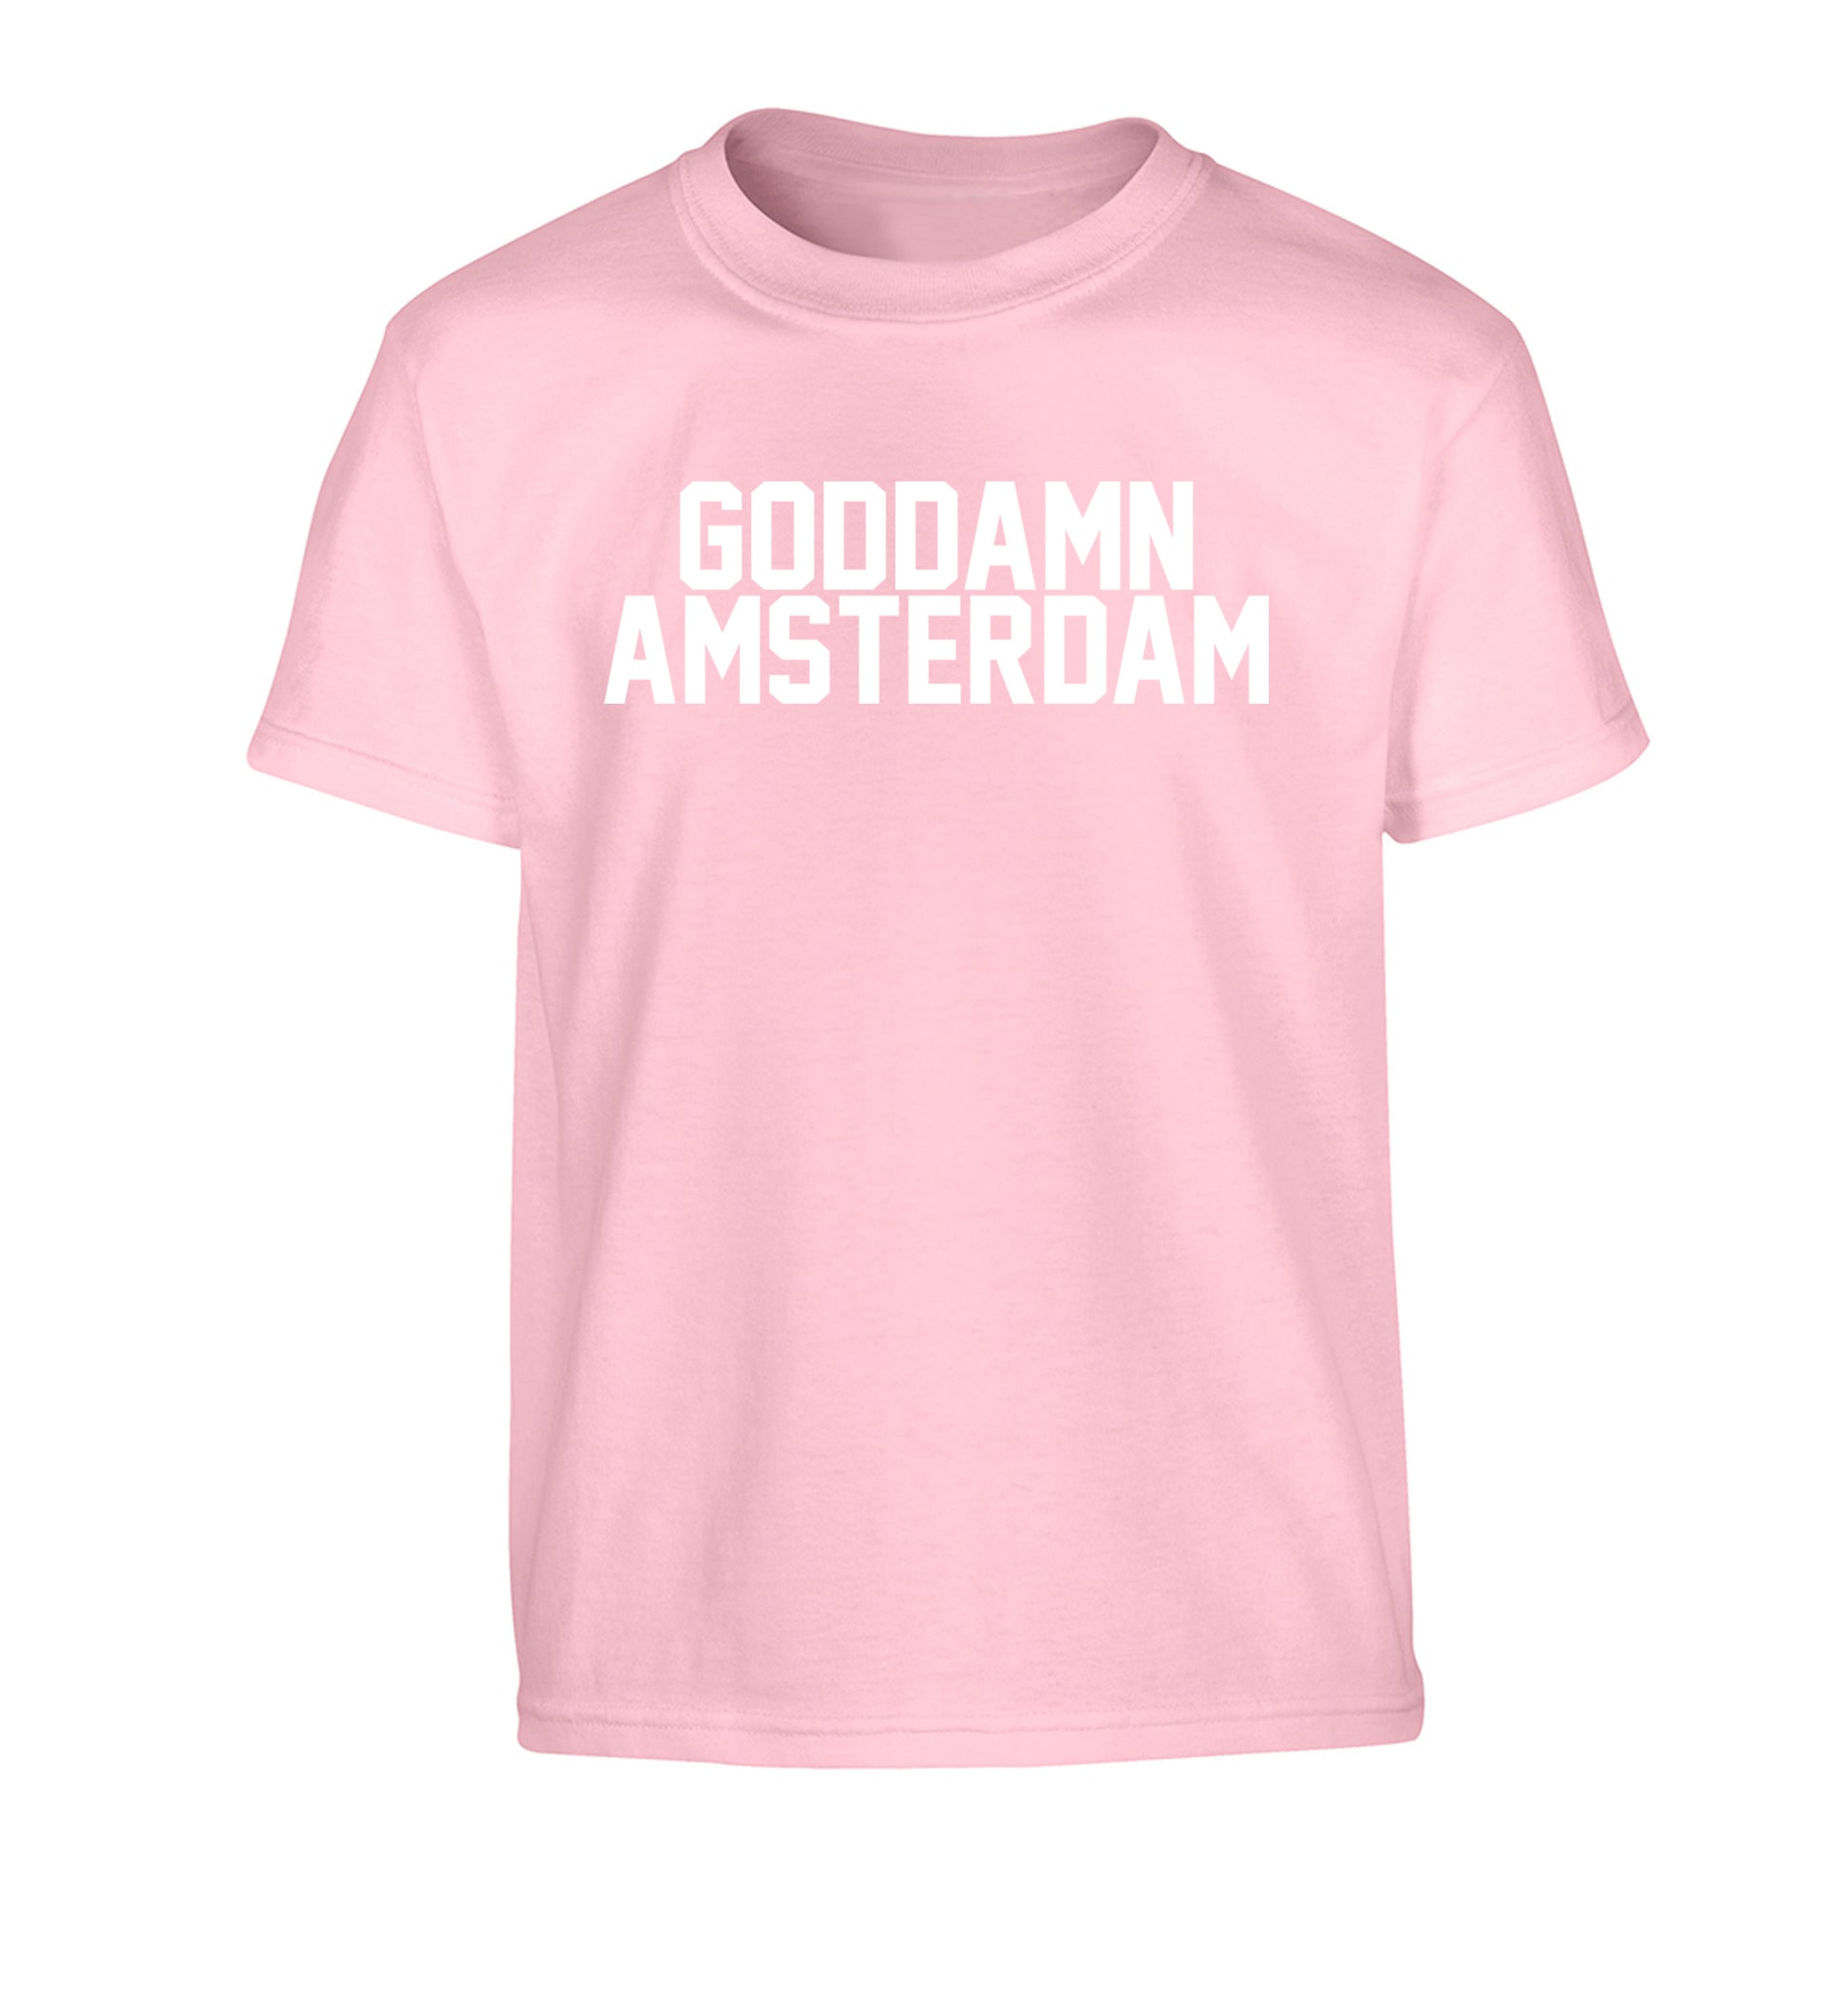 Goddamn Amsterdam Children's light pink Tshirt 12-13 Years